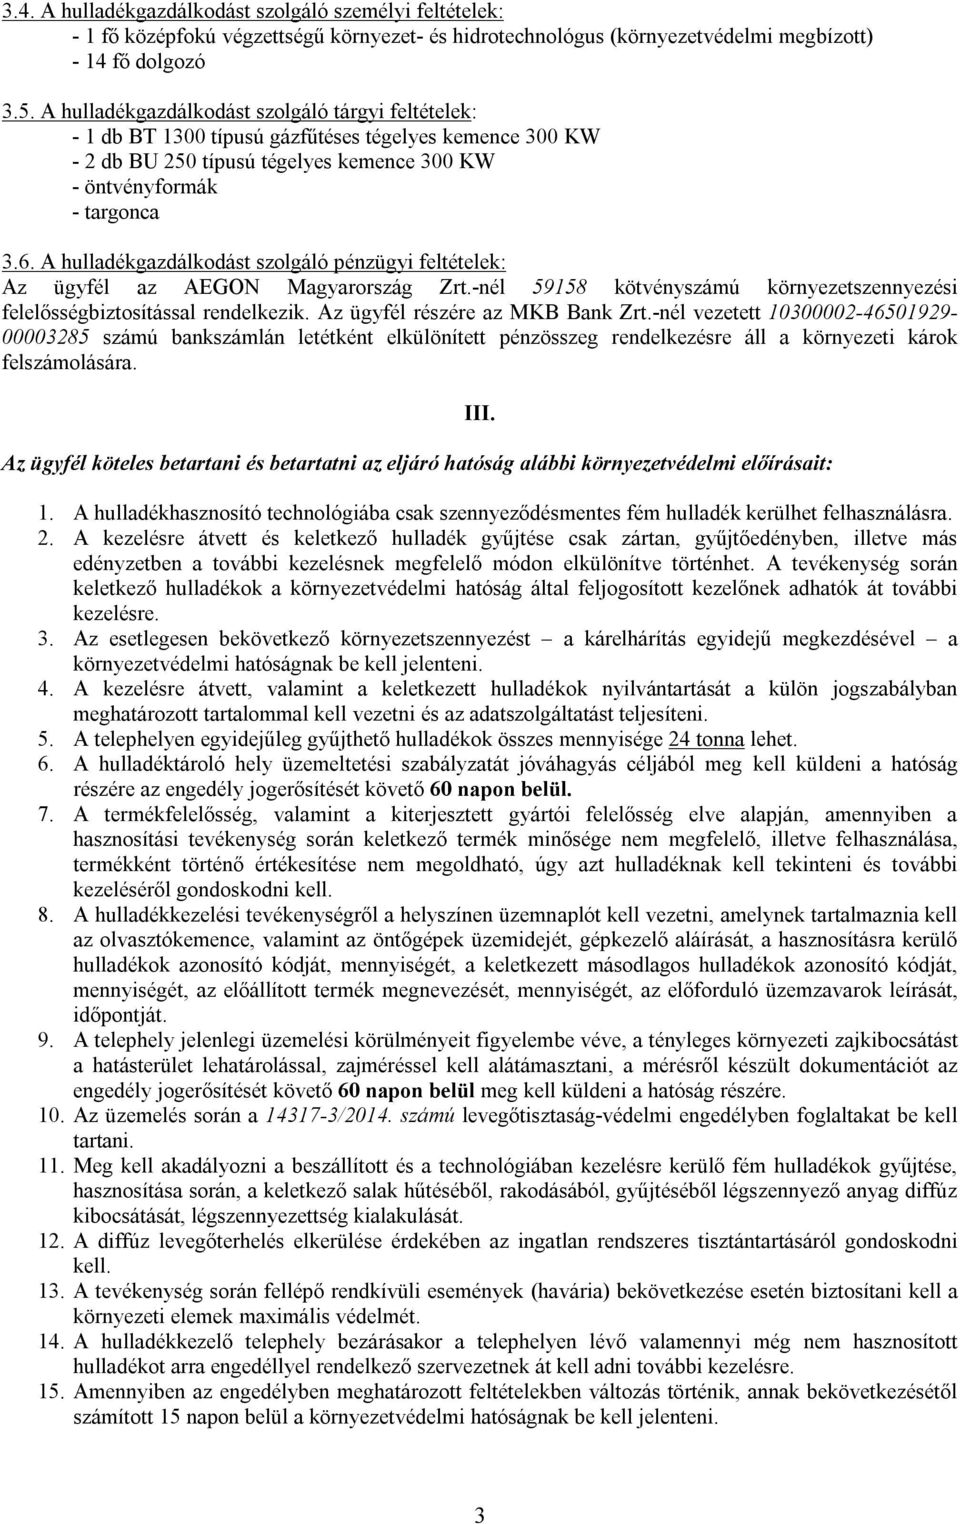 A hulladékgazdálkodást szolgáló pénzügyi feltételek: Az ügyfél az AEGON Magyarország Zrt.-nél 59158 kötvényszámú környezetszennyezési felelősségbiztosítással rendelkezik.